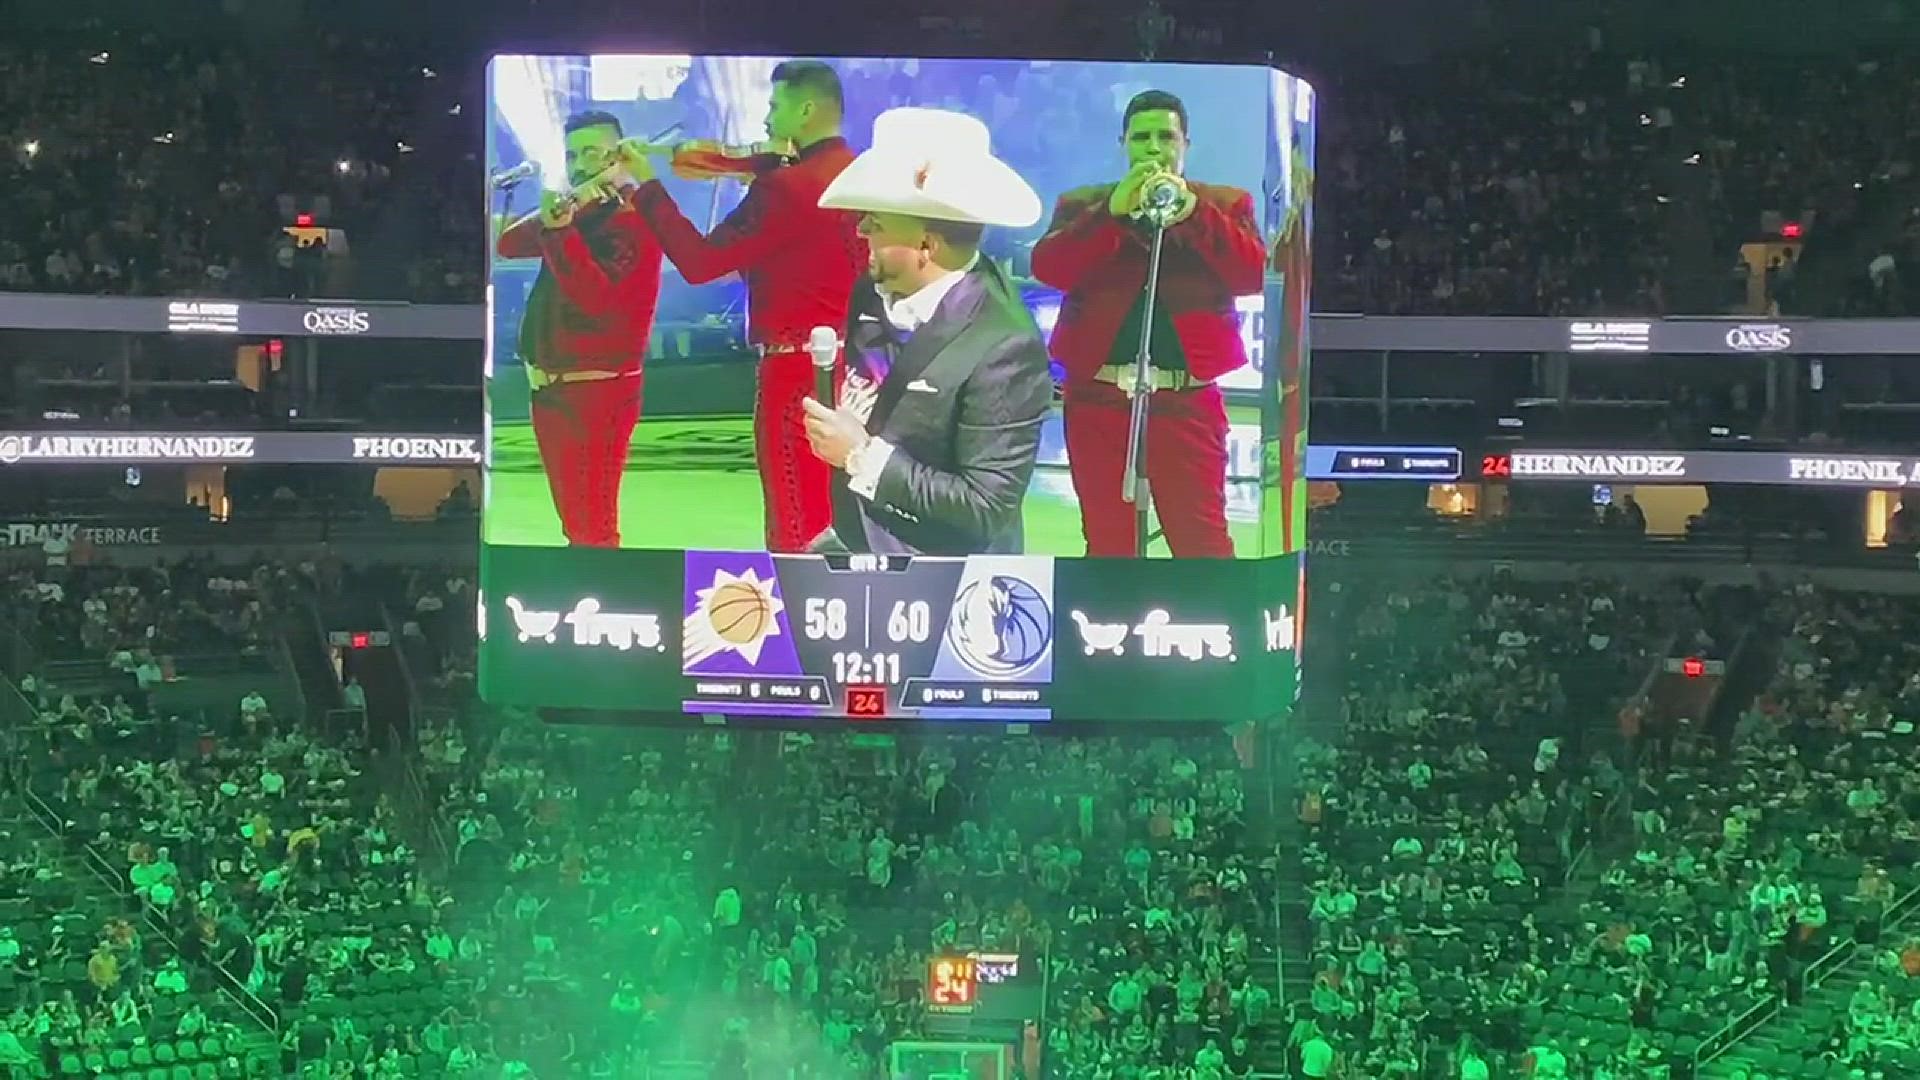 Larry Hernandez interpreta “El Rey” durante su presentación en el medio tiempo del Juego 2 de Los Soles vs. Mavericks en los Playoffs.